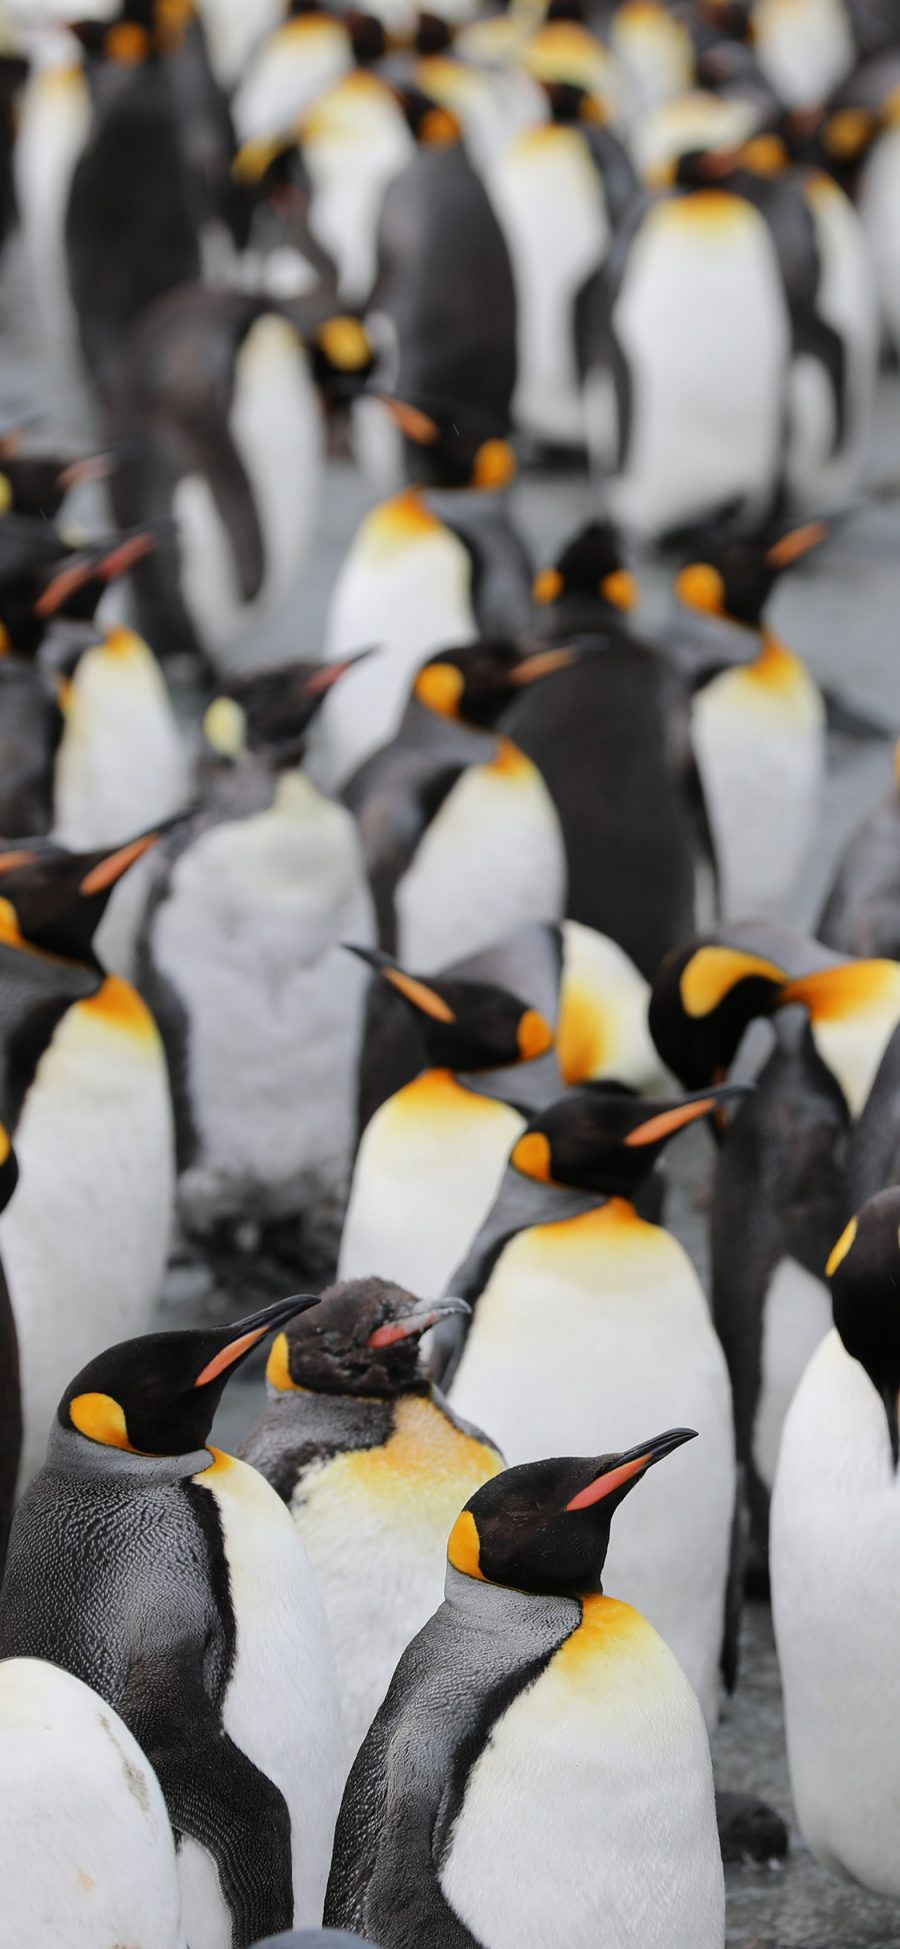 [2436×1125]南极 保护动物 企鹅 群居 苹果手机壁纸图片